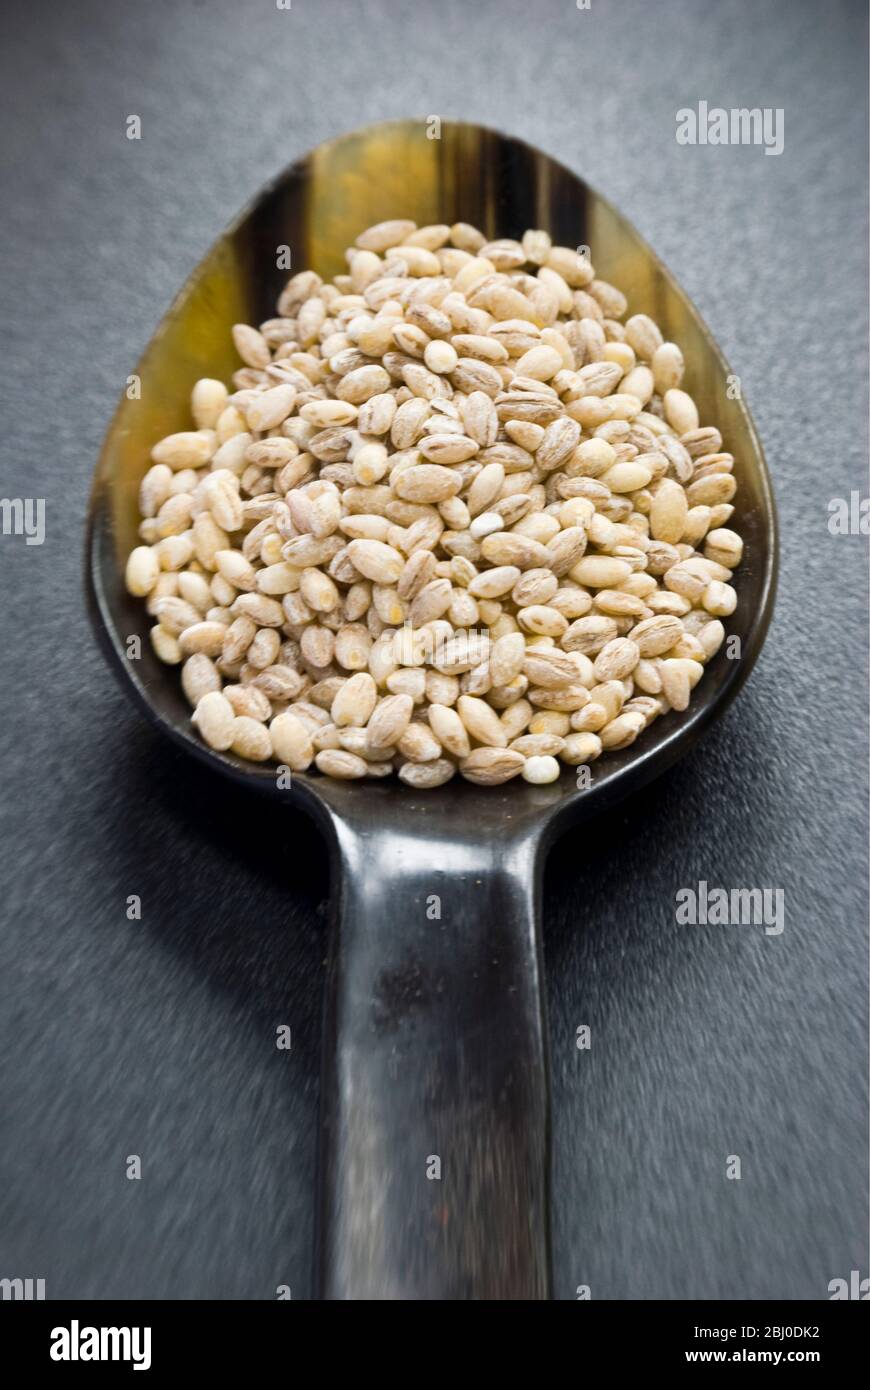 Ein Hornlöffel ganze Perle Gerste Korn auf dunkler Oberfläche - Stockfoto